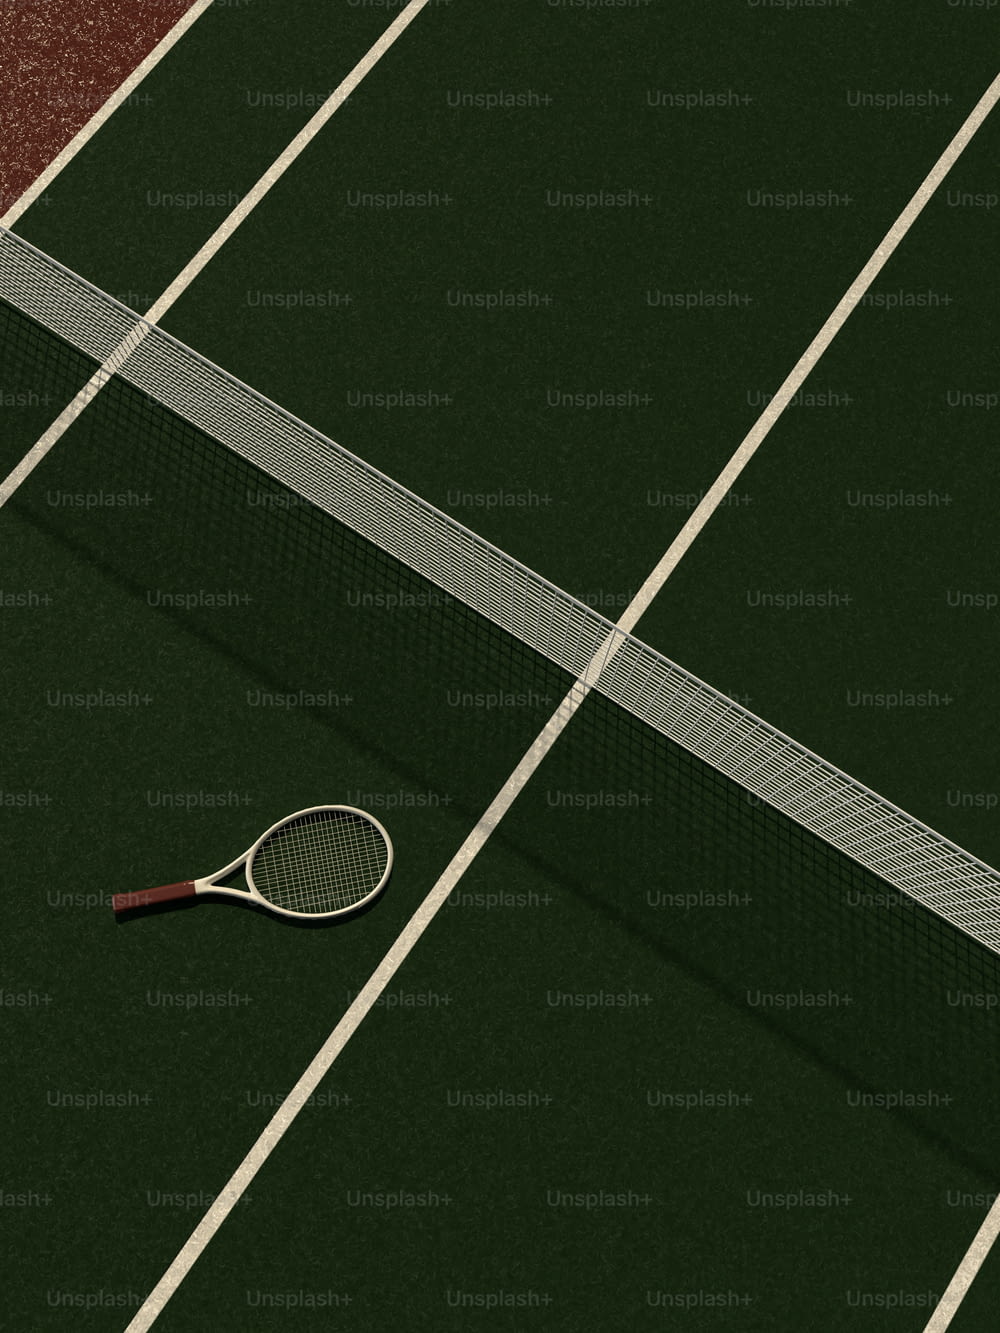 une raquette de tennis et une balle sur un court de tennis